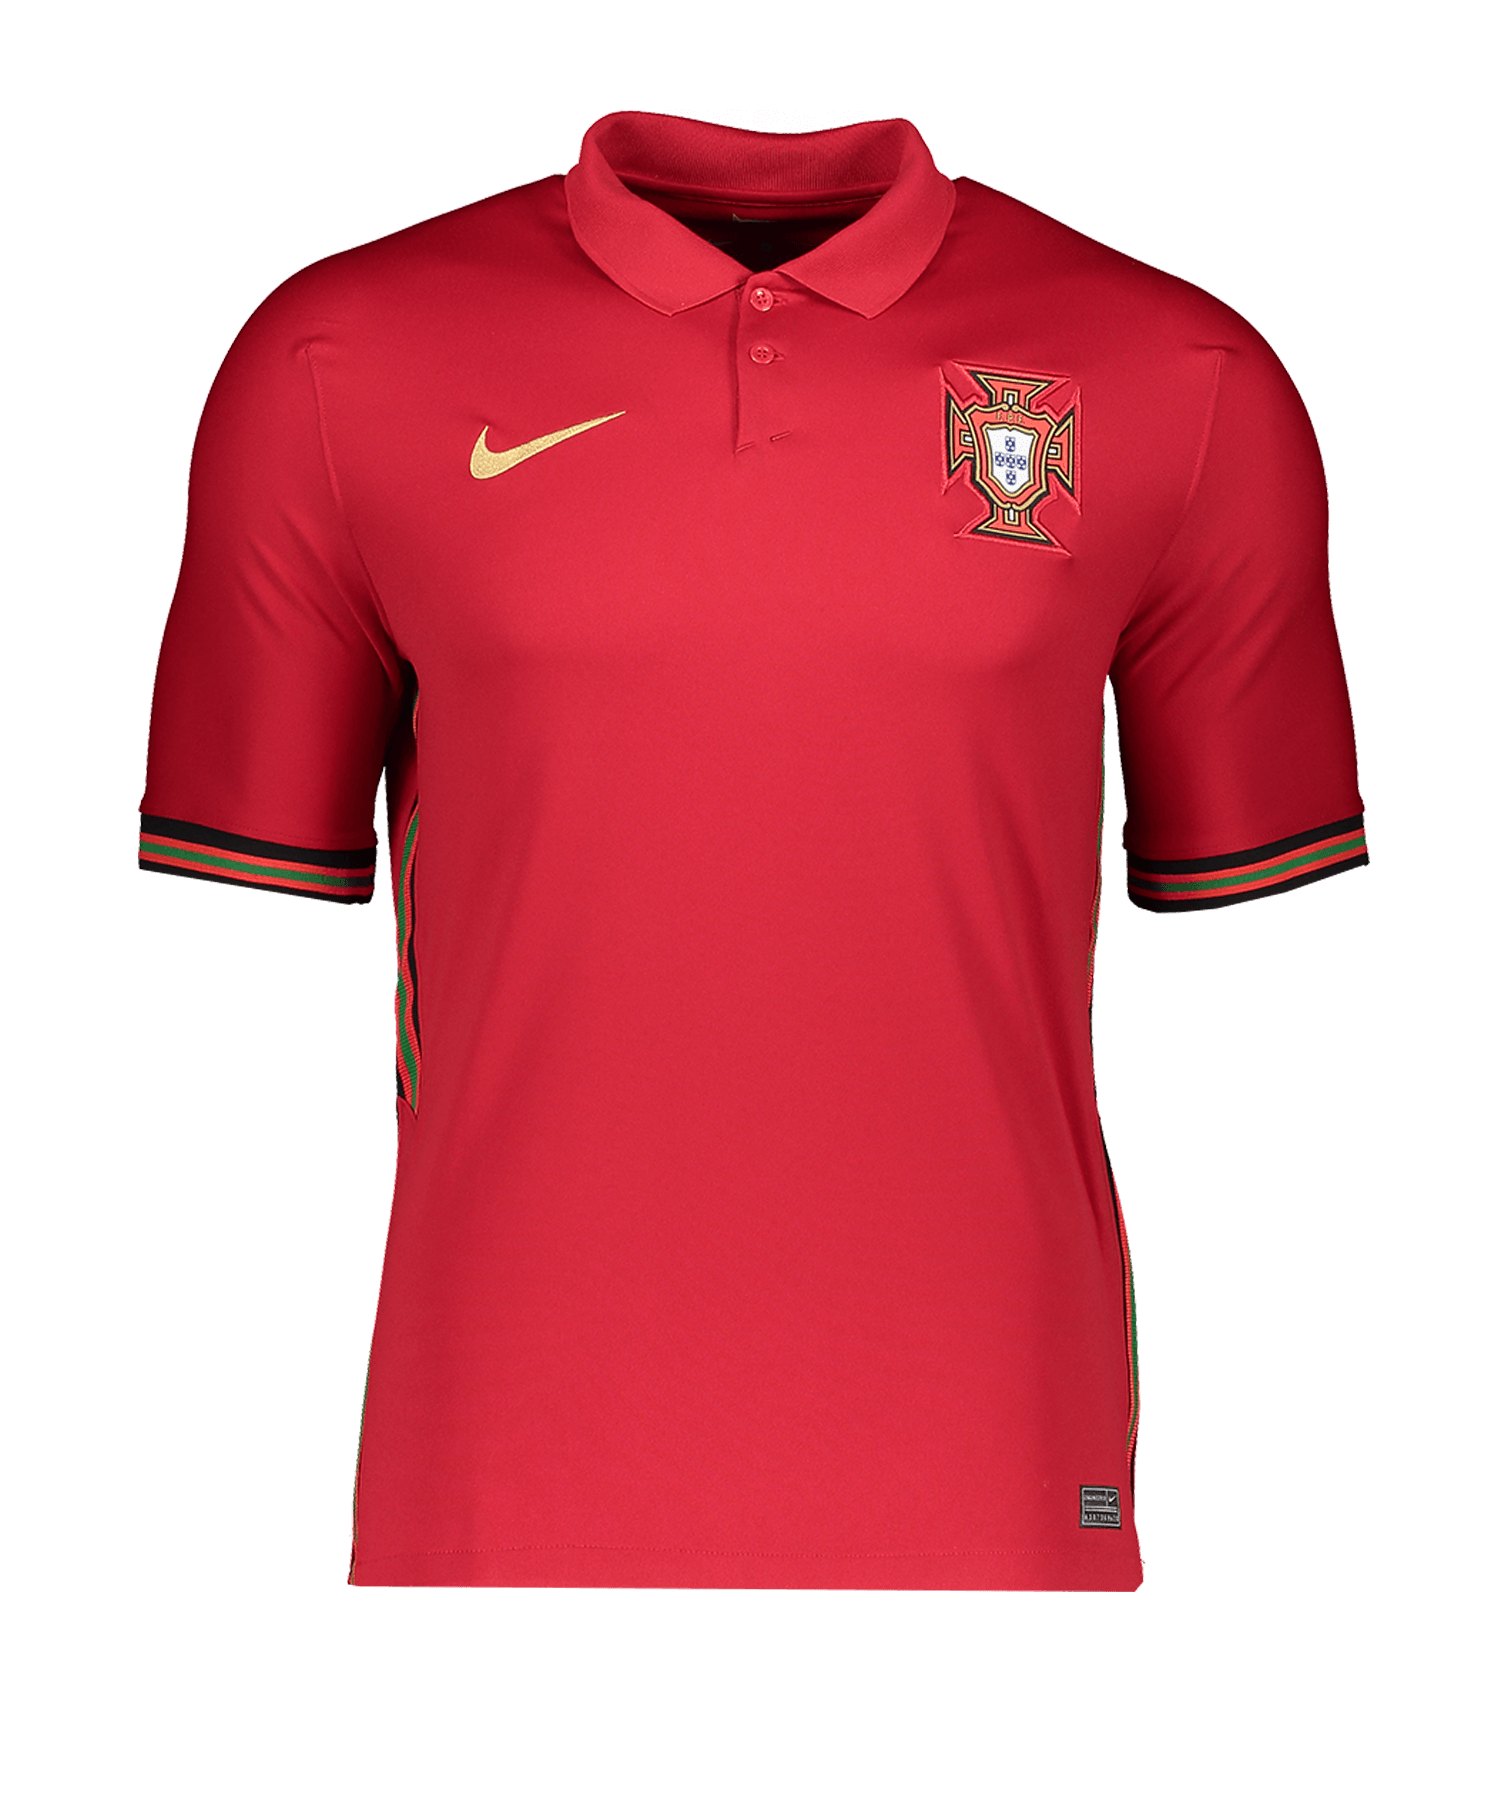 Nike Portugal Trikot Home EM 2021 F687 | Replicas ...